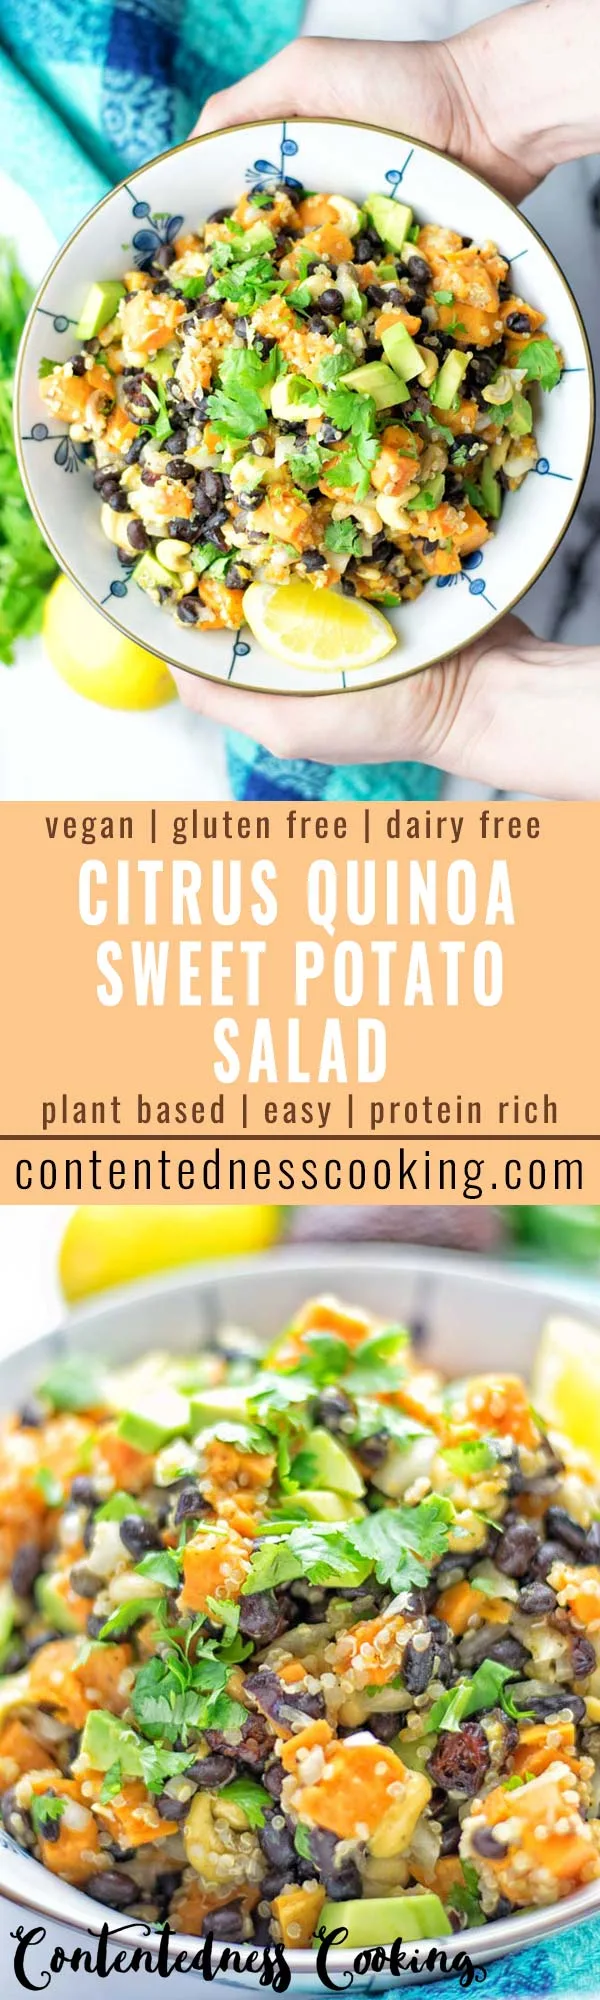 Citrus Quinoa Sweet Potato Salad | #vegan #glutenfree #contentednesscooking #salad #quinoa #dairyfree